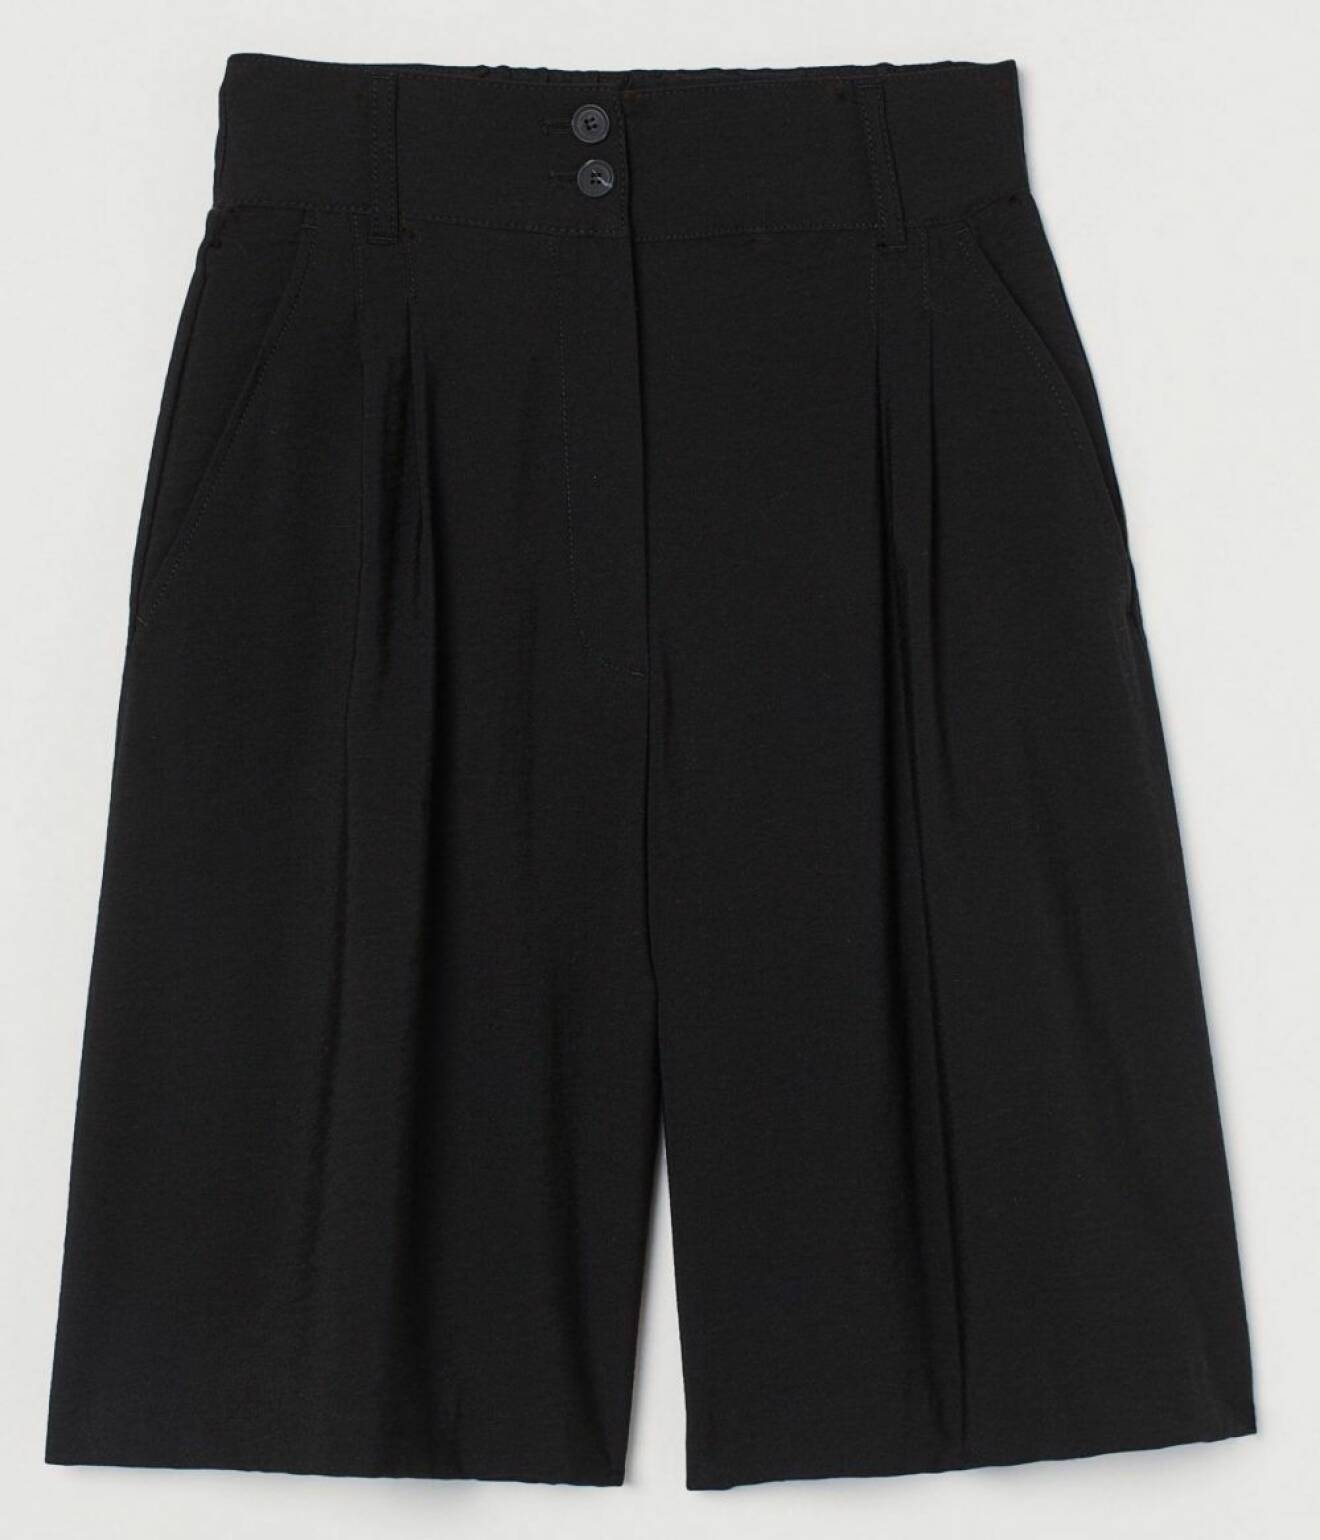 H&M har ett par prisvärda och bekväma bermudashorts i svart